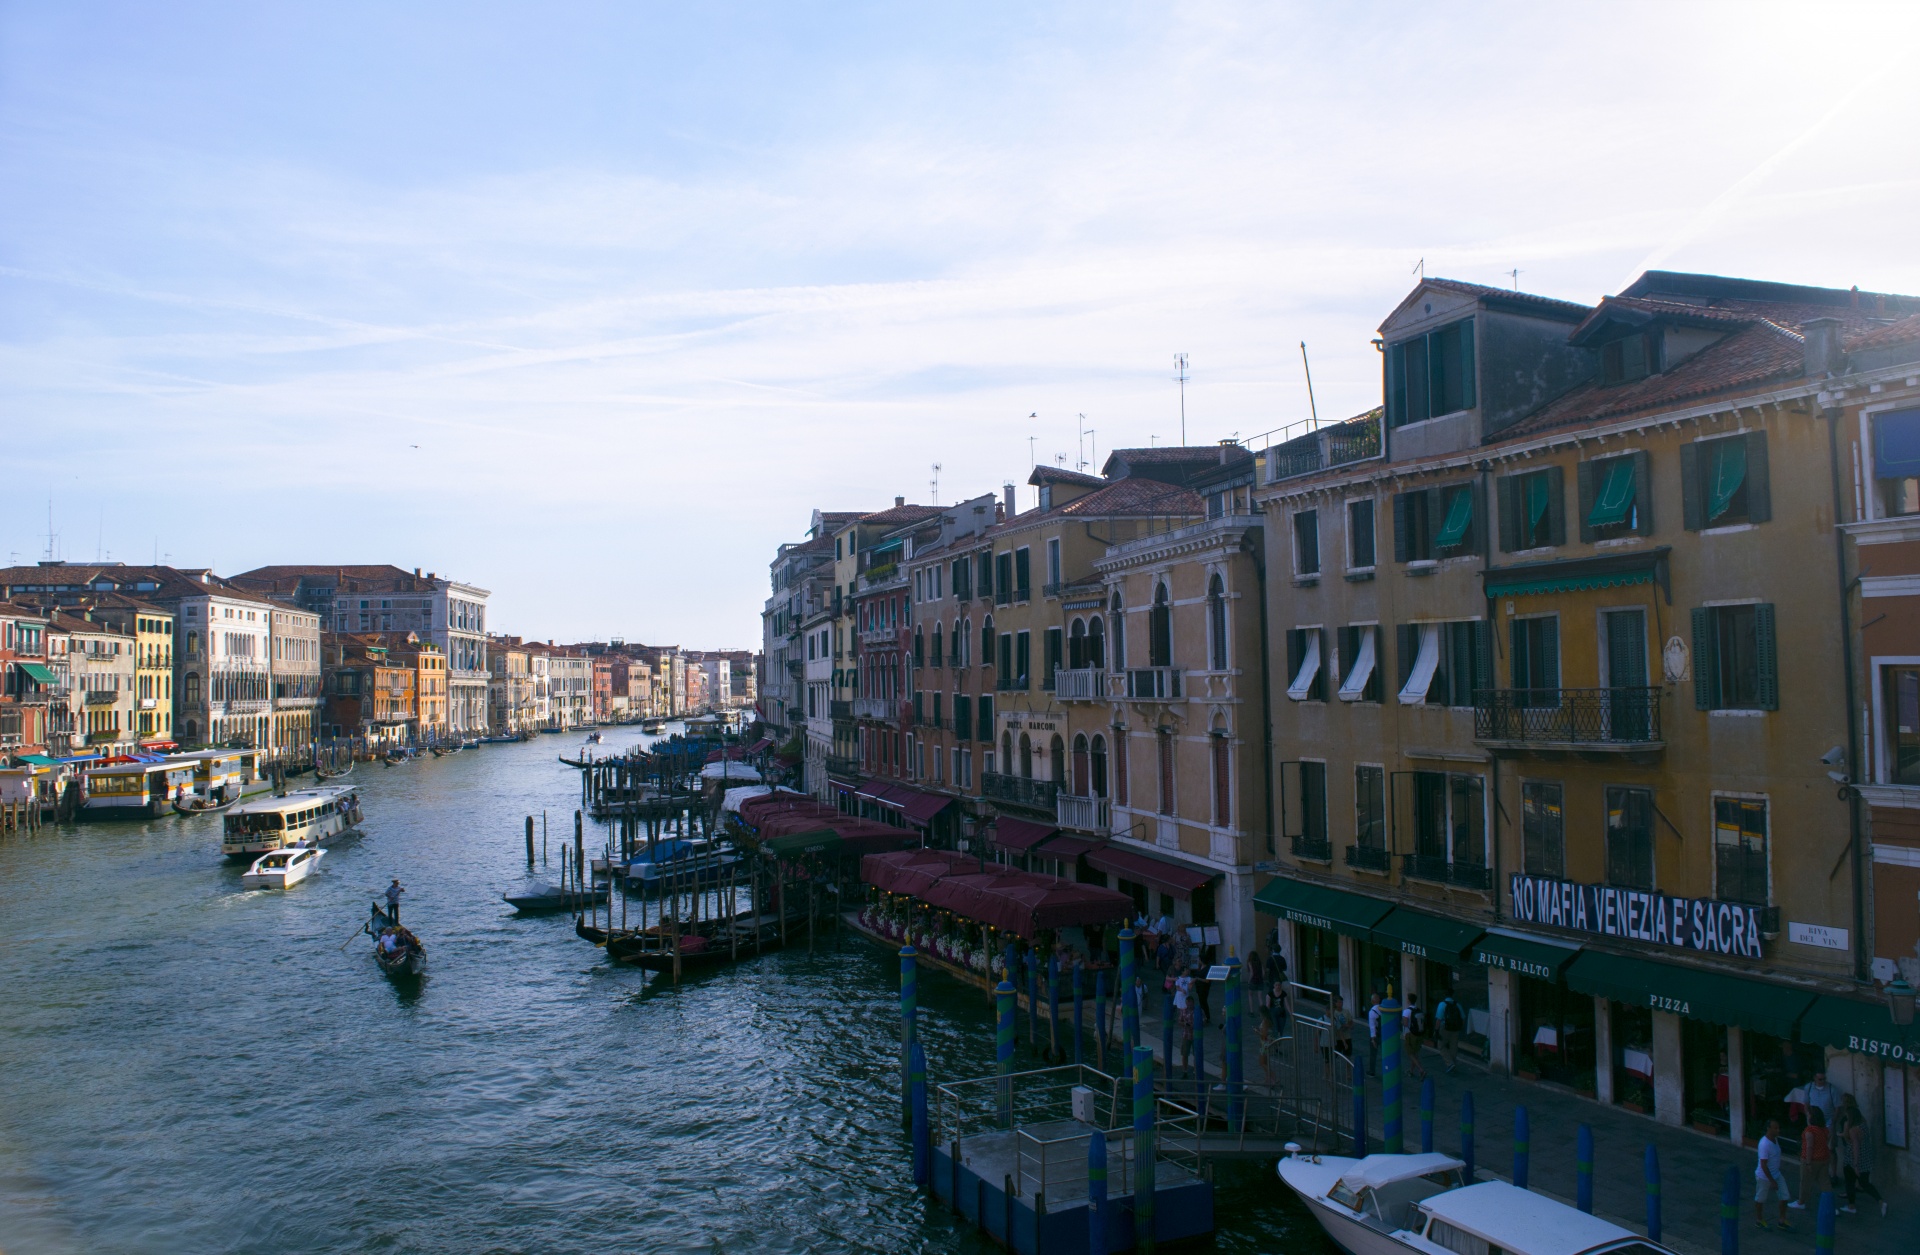 Venice Image 1183